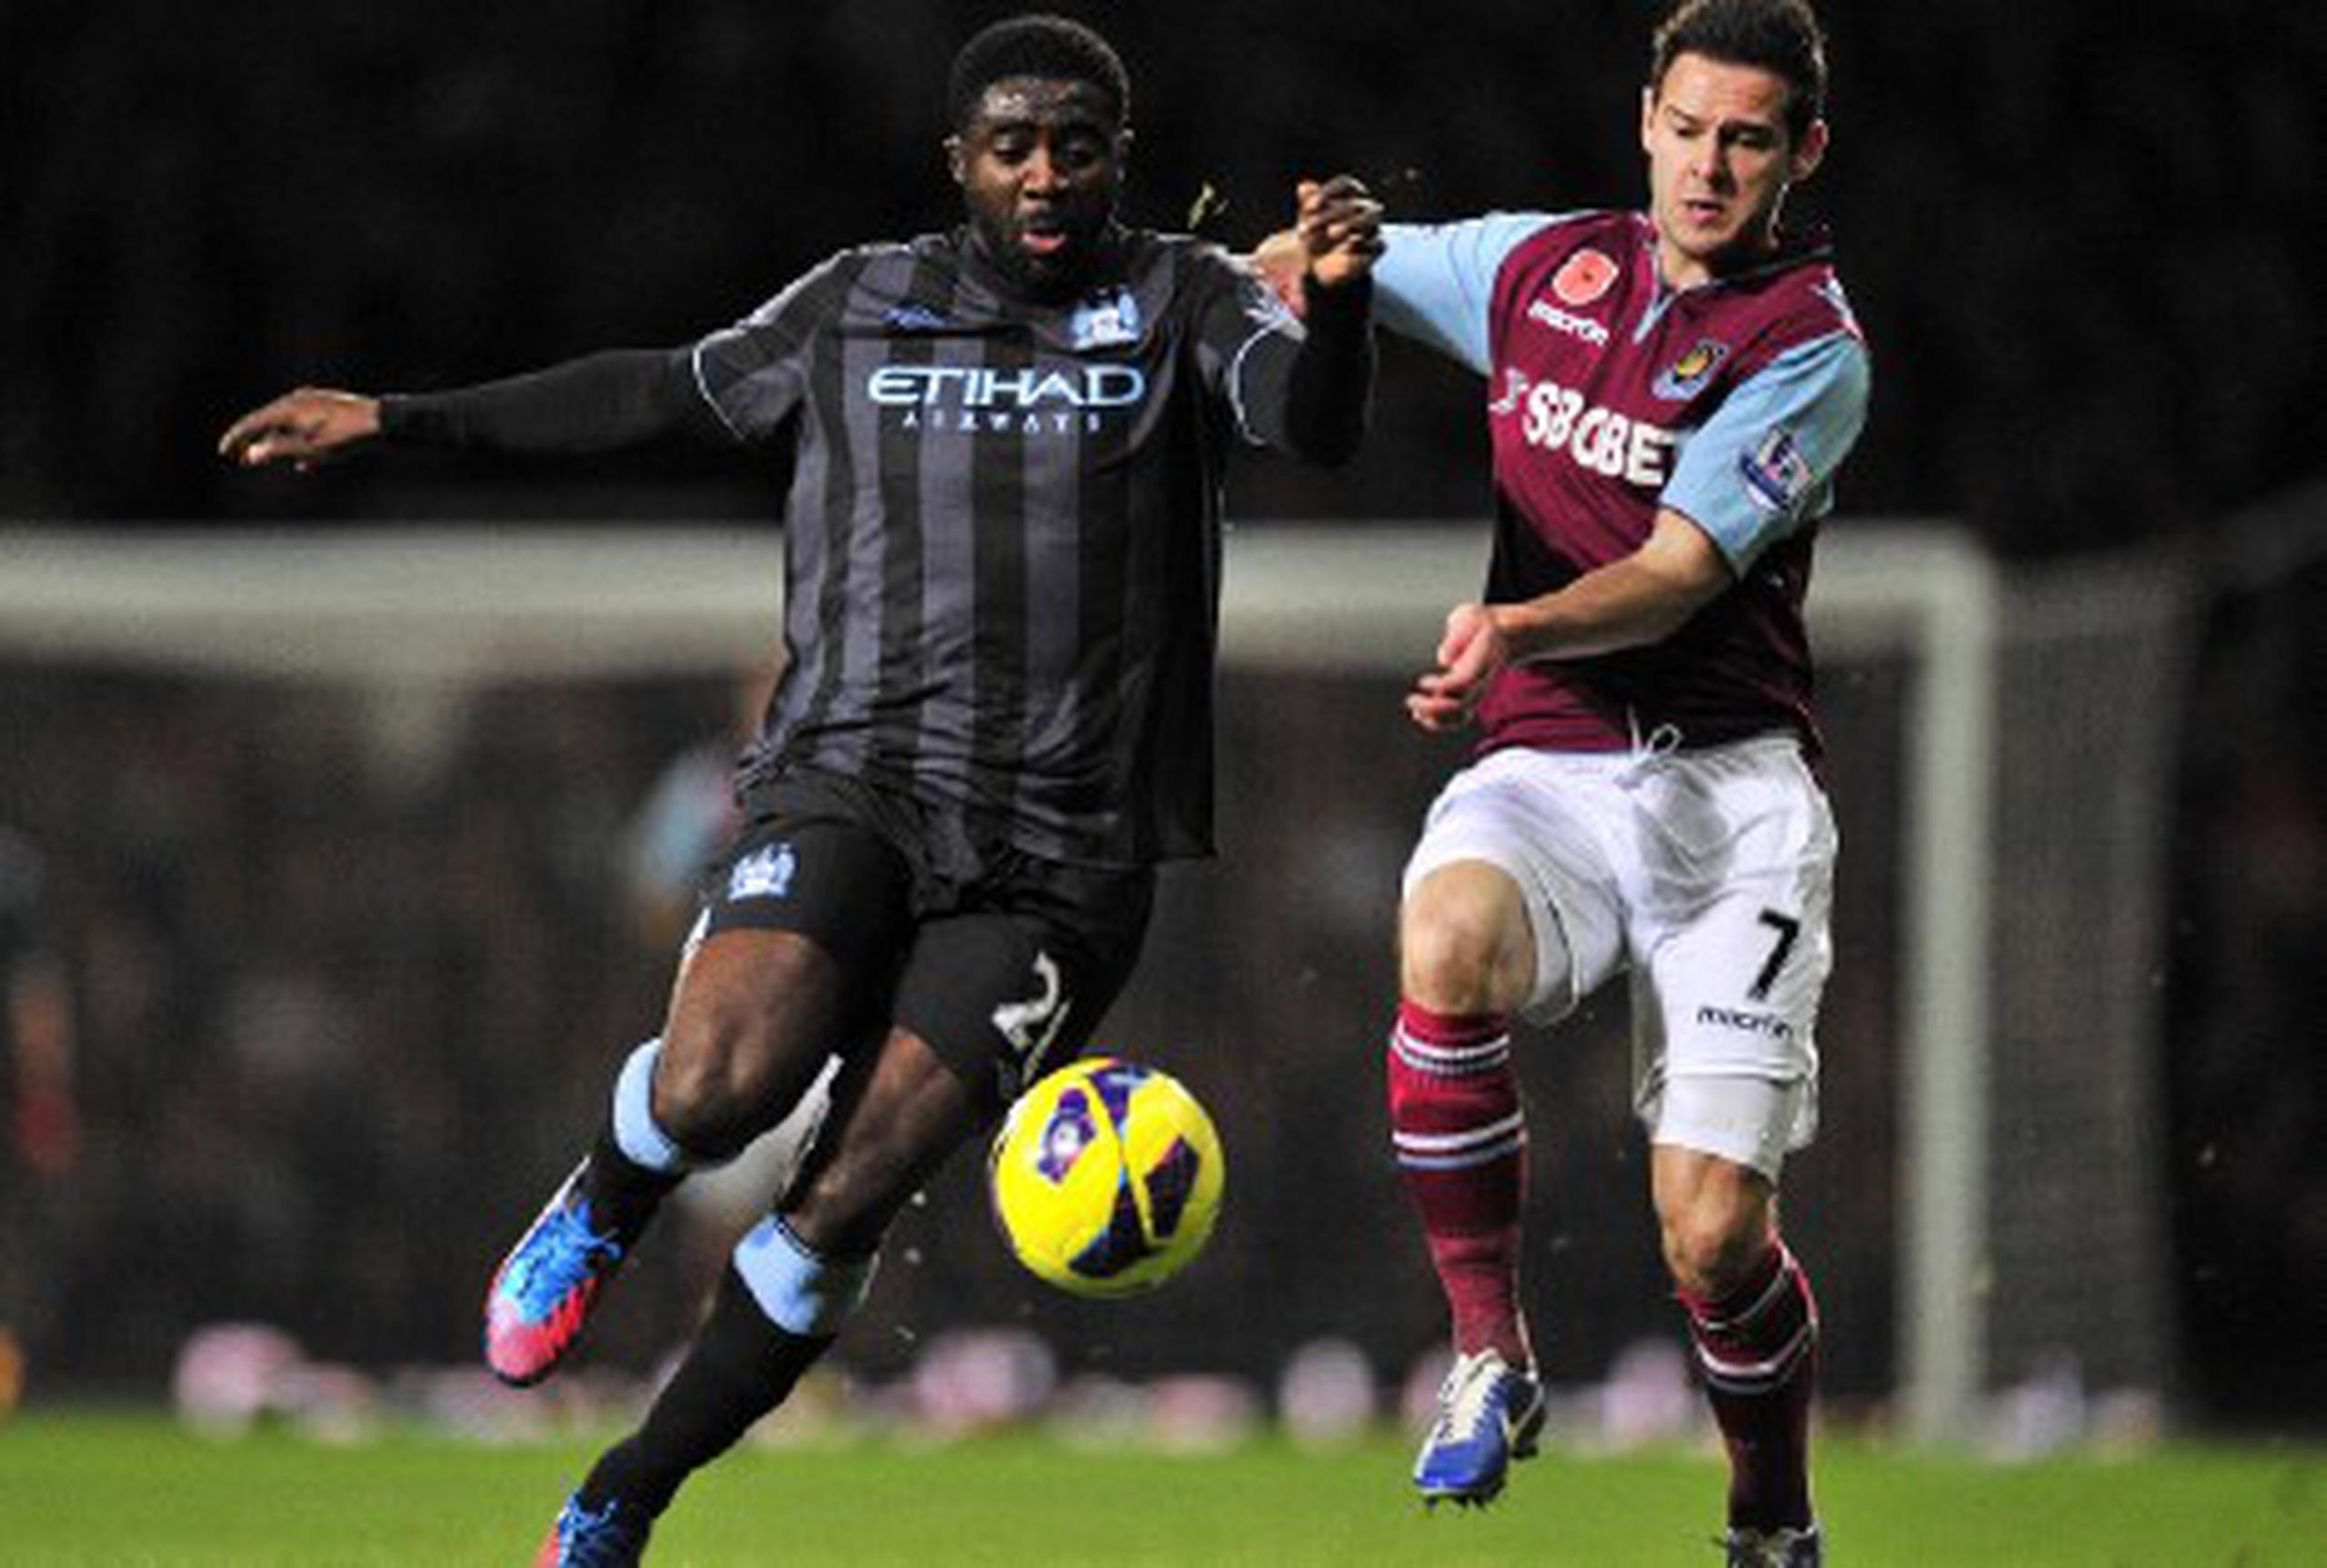 El defensa del Manchester City, Kolo Toure, izq., lucha por la posesión de balón con Matt Jarvis del West Ham. (AFP / Glyn Kirk)